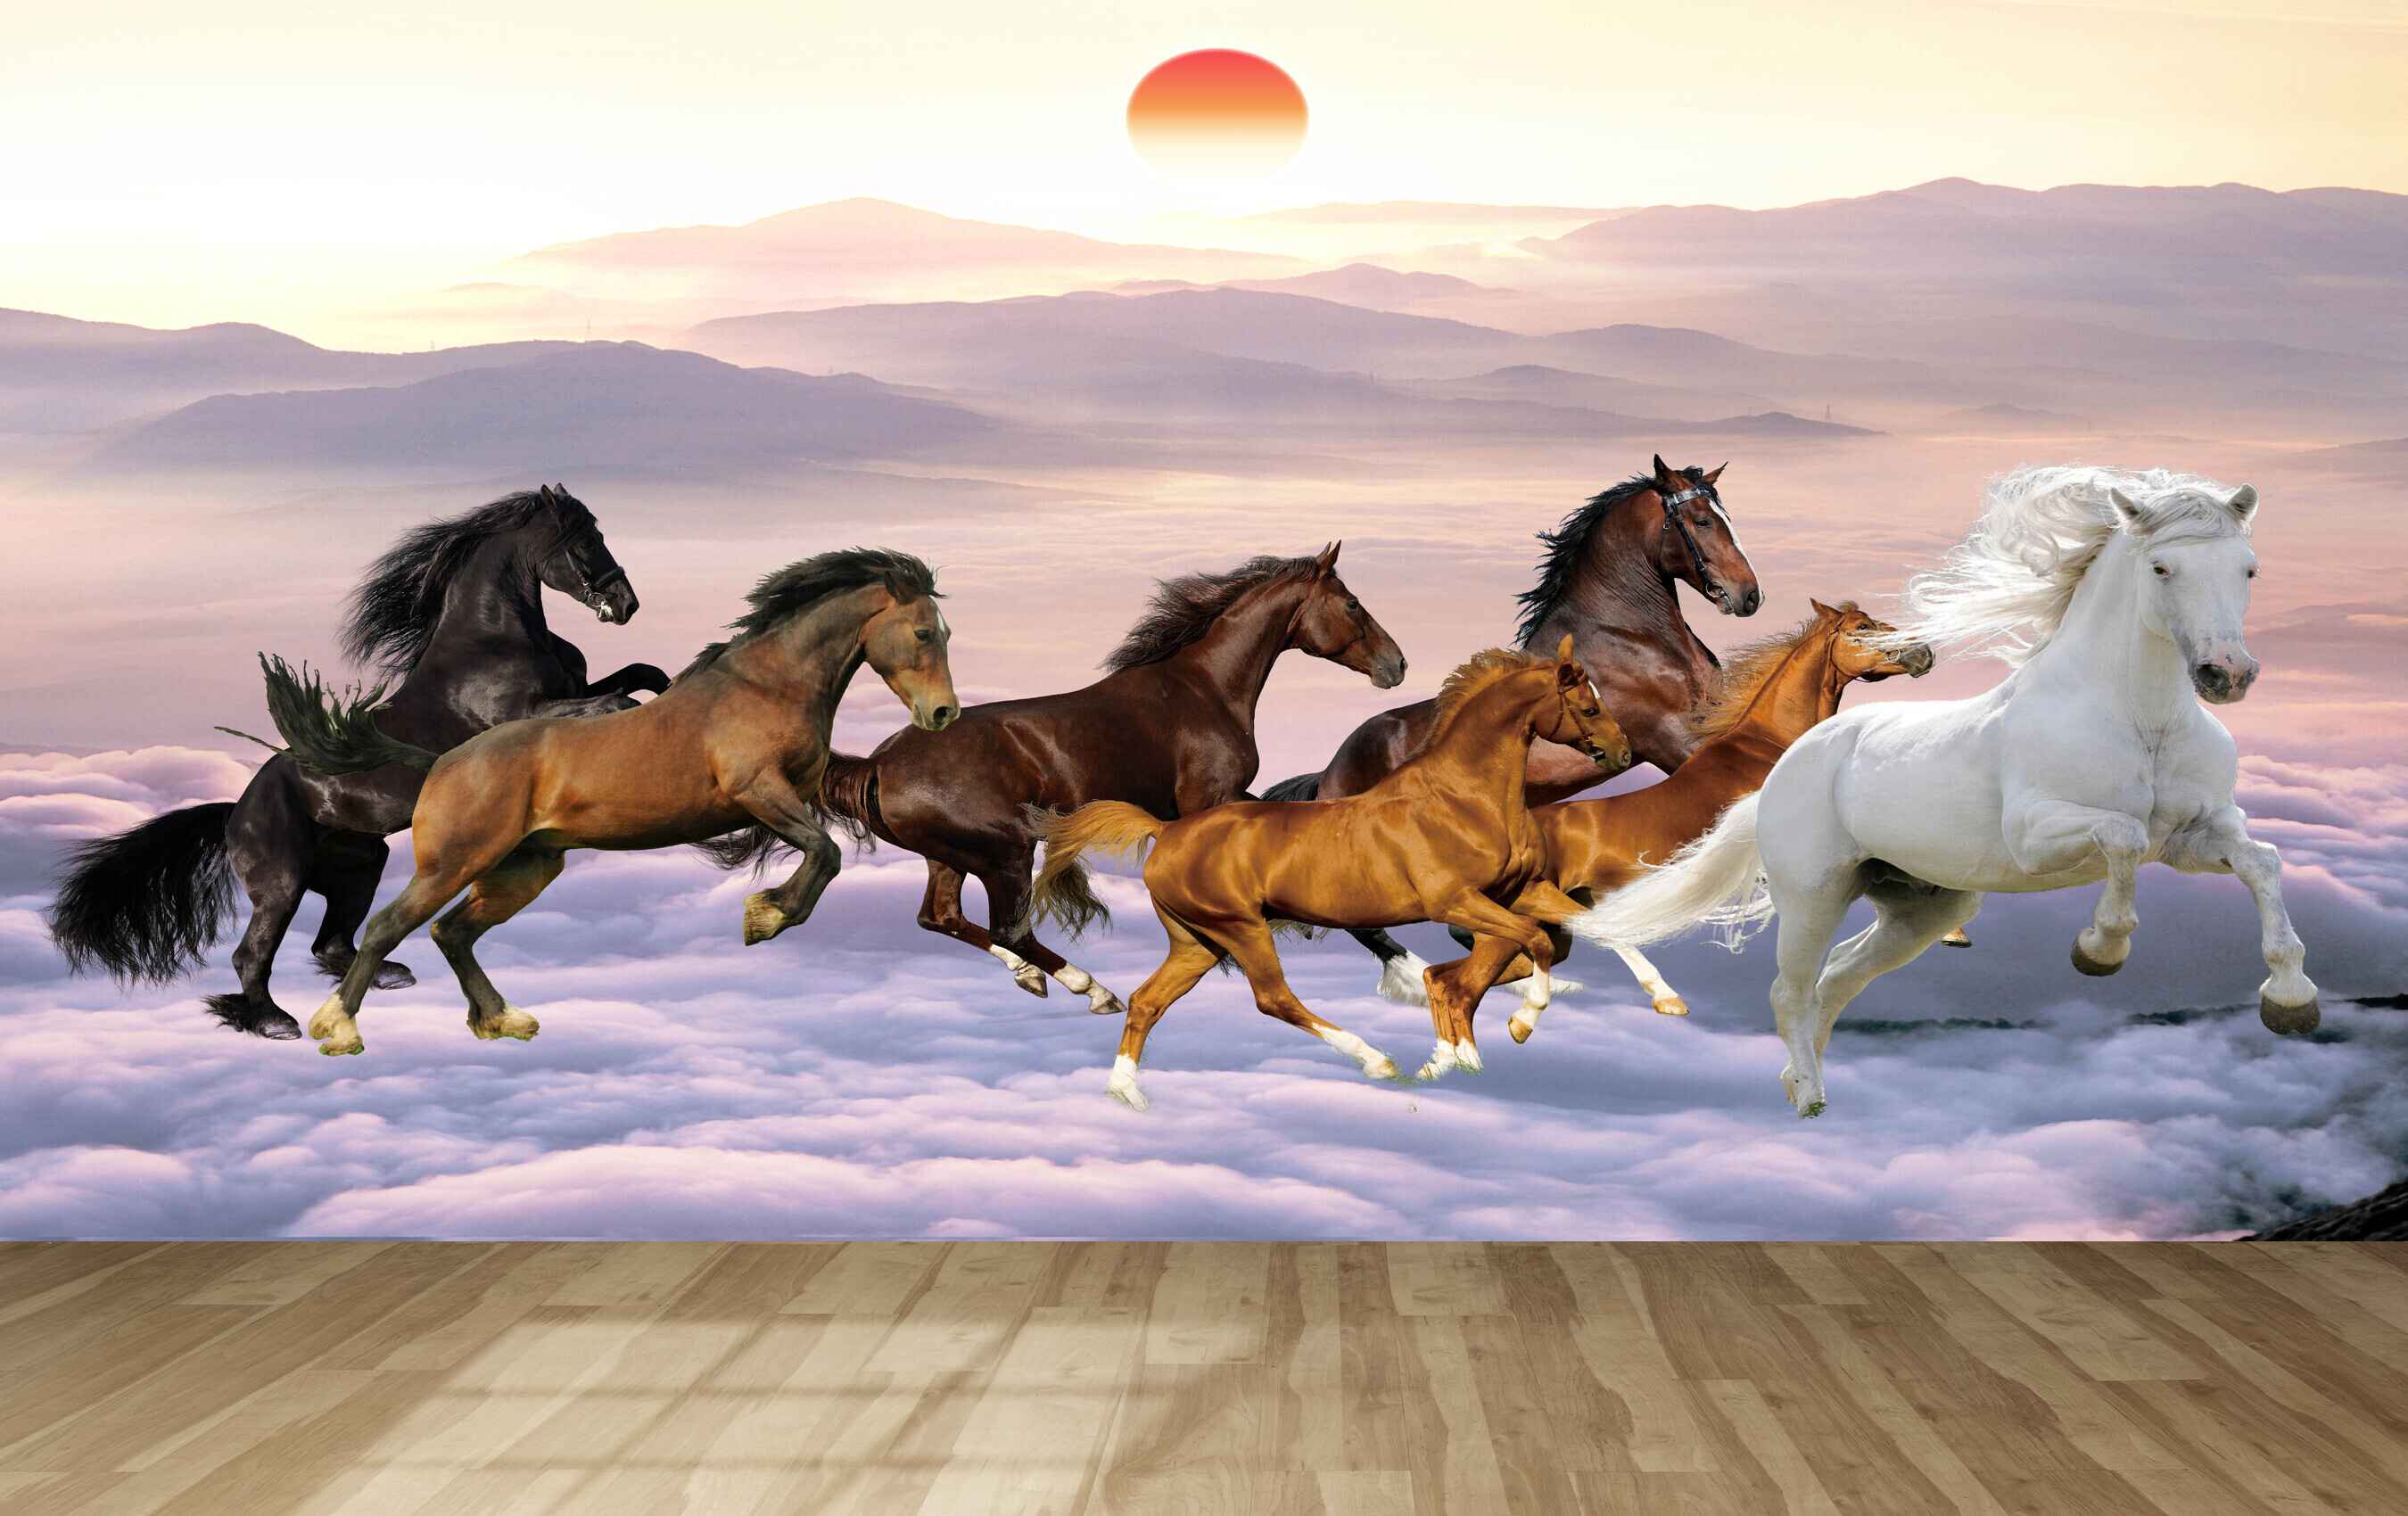 Phải chăng bạn là một tín đồ của những chú ngựa ngựa vằn hoang dã? Khám phá bức ảnh đẹp như tranh vẽ với đàn ngựa hoang dã chạy tung tăng trên đồng cỏ xanh mơn mởn trong ánh nắng chiều hoàng hôn.